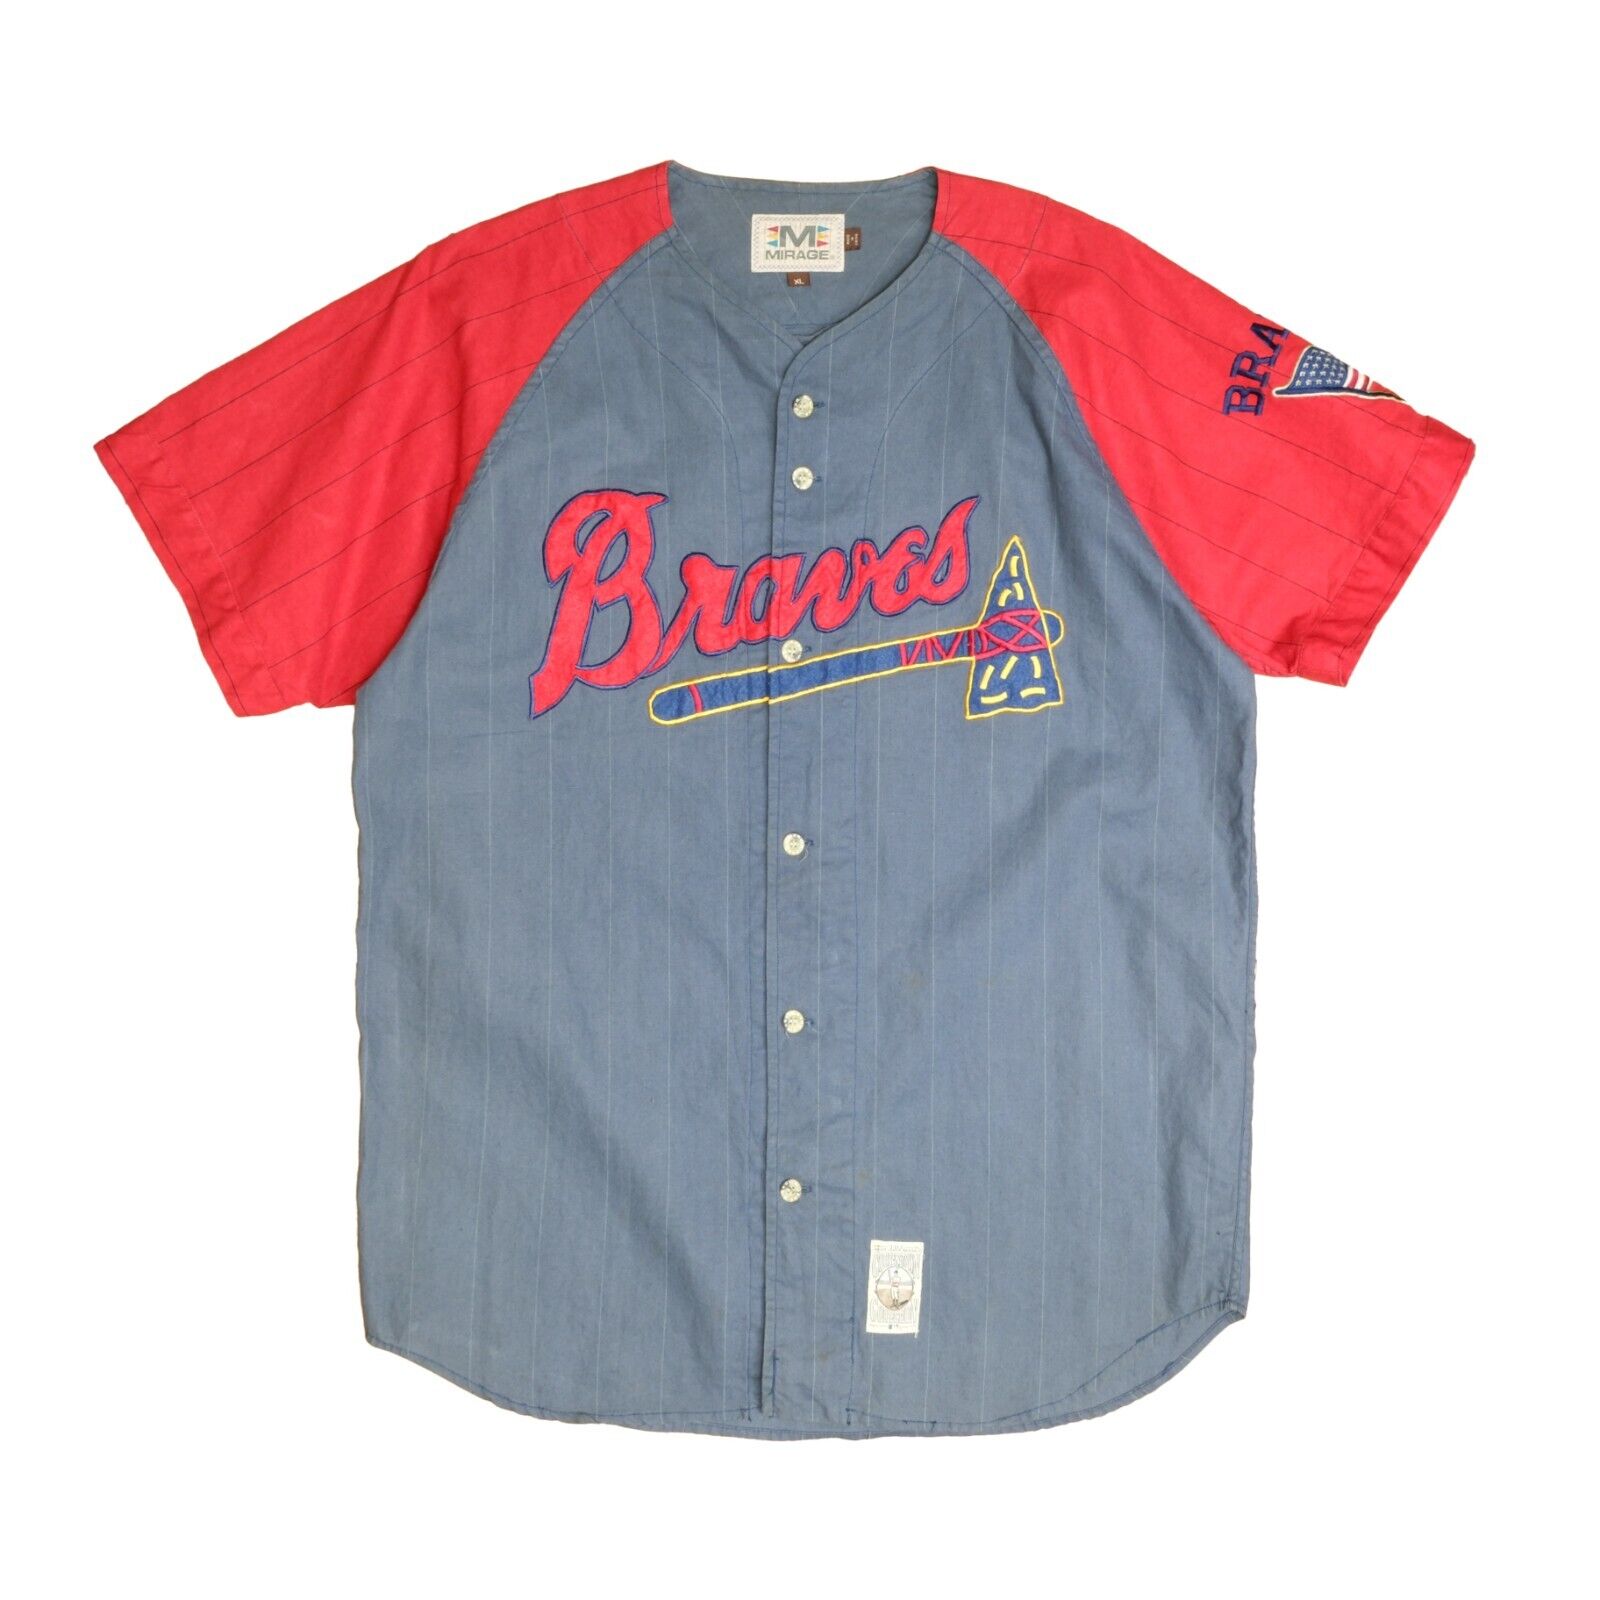 Atlanta Braves Mirage Baseball Jersey Size XL Cooperstown